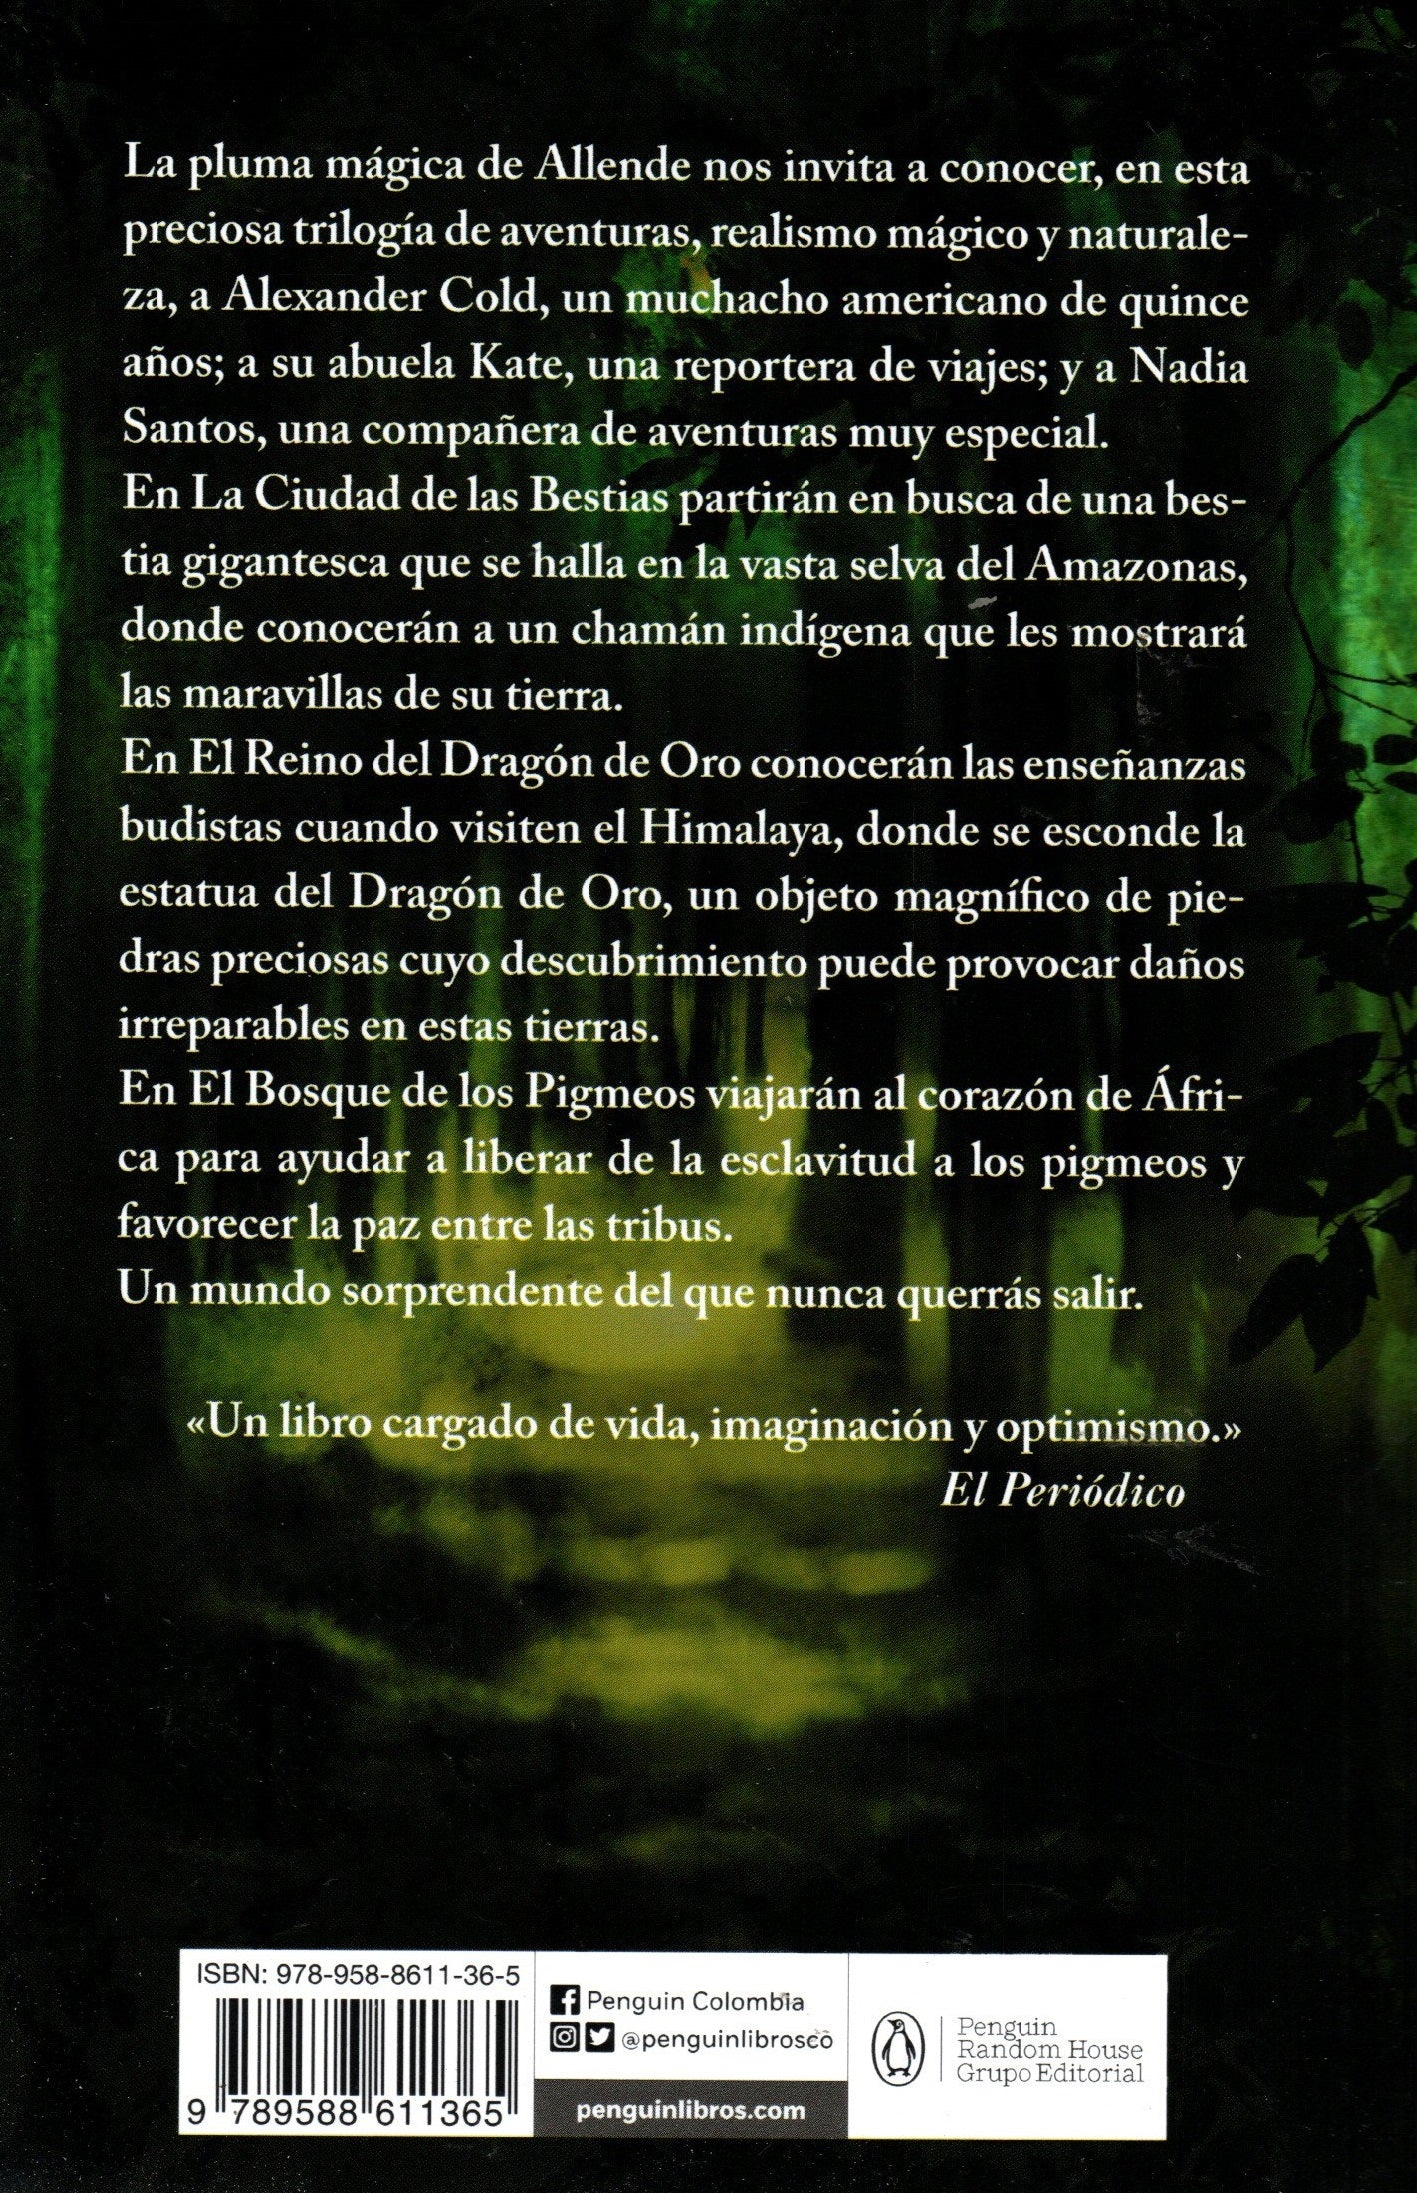 Libro Isabel Allende - Memorias Del Águila Y Del Jaguar